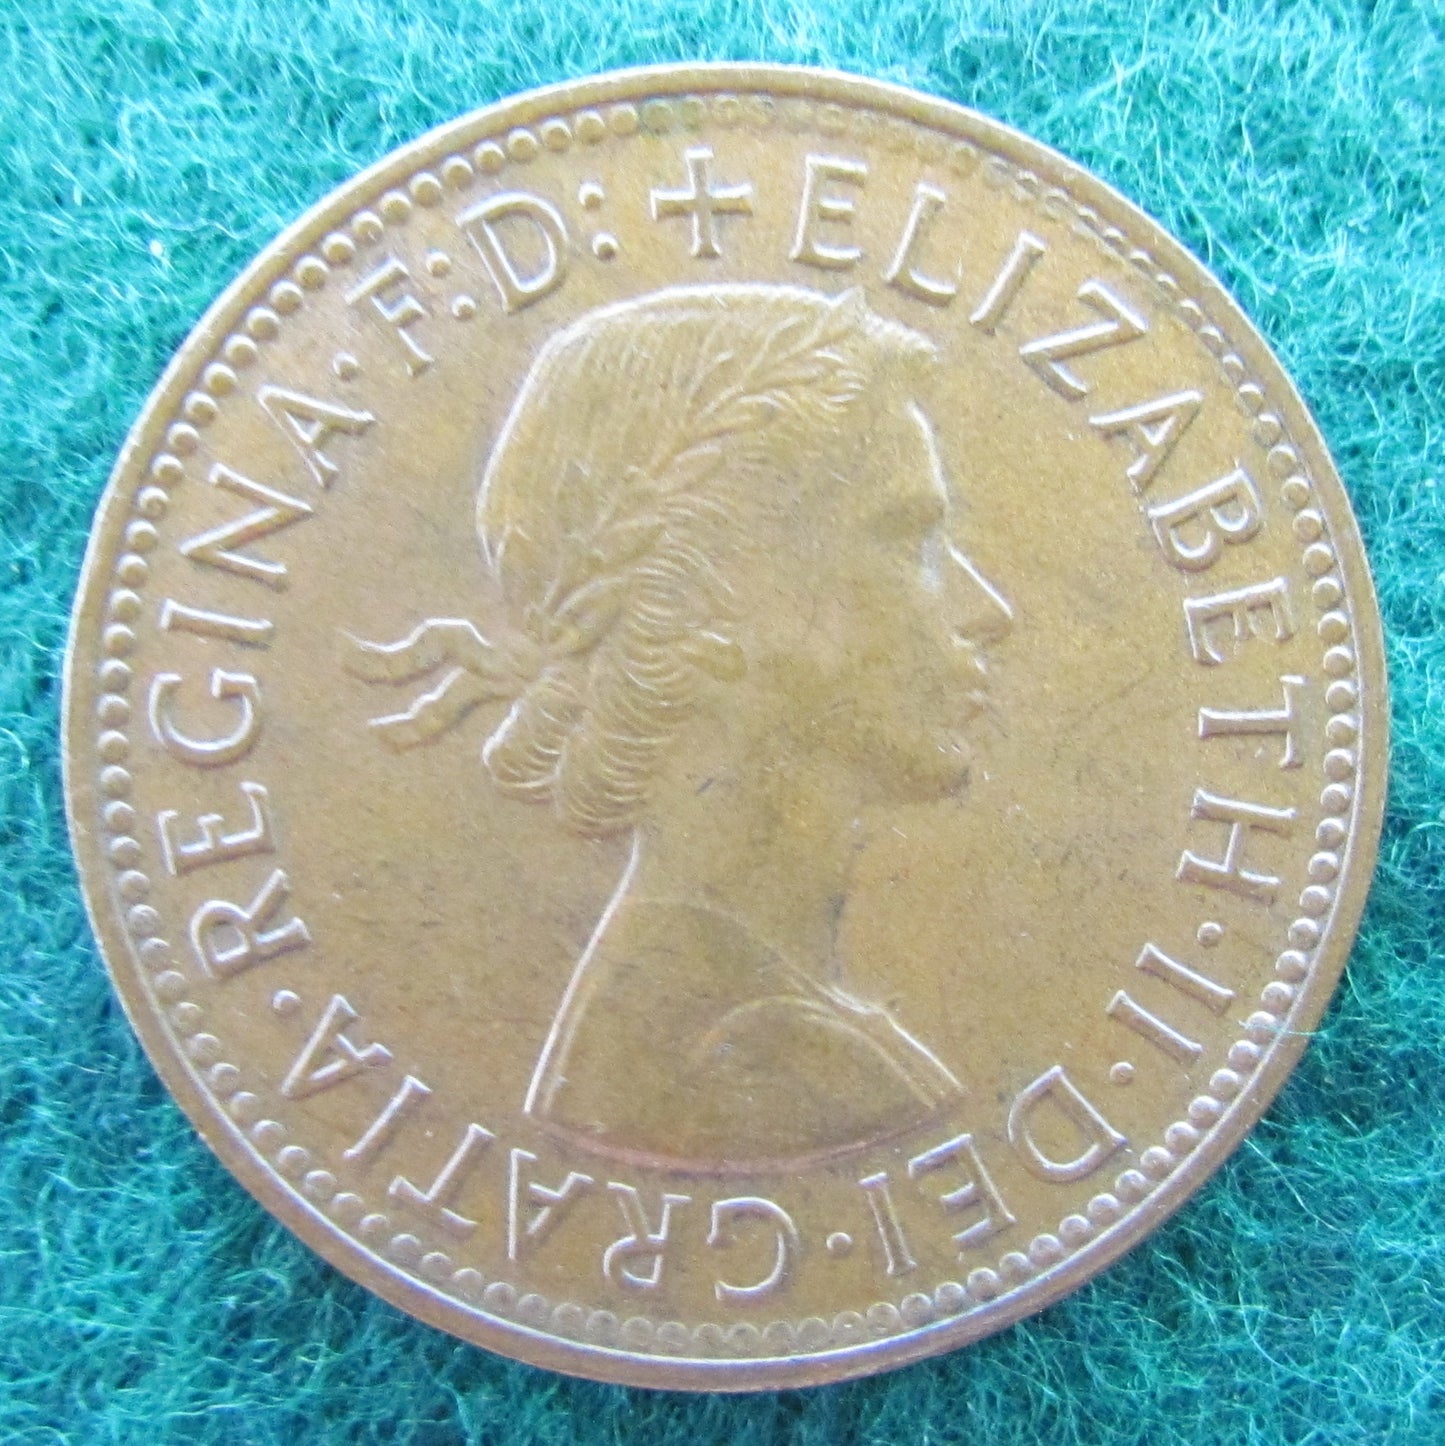 Australian 1960 Half Penny Queen Elizabeth II Coin